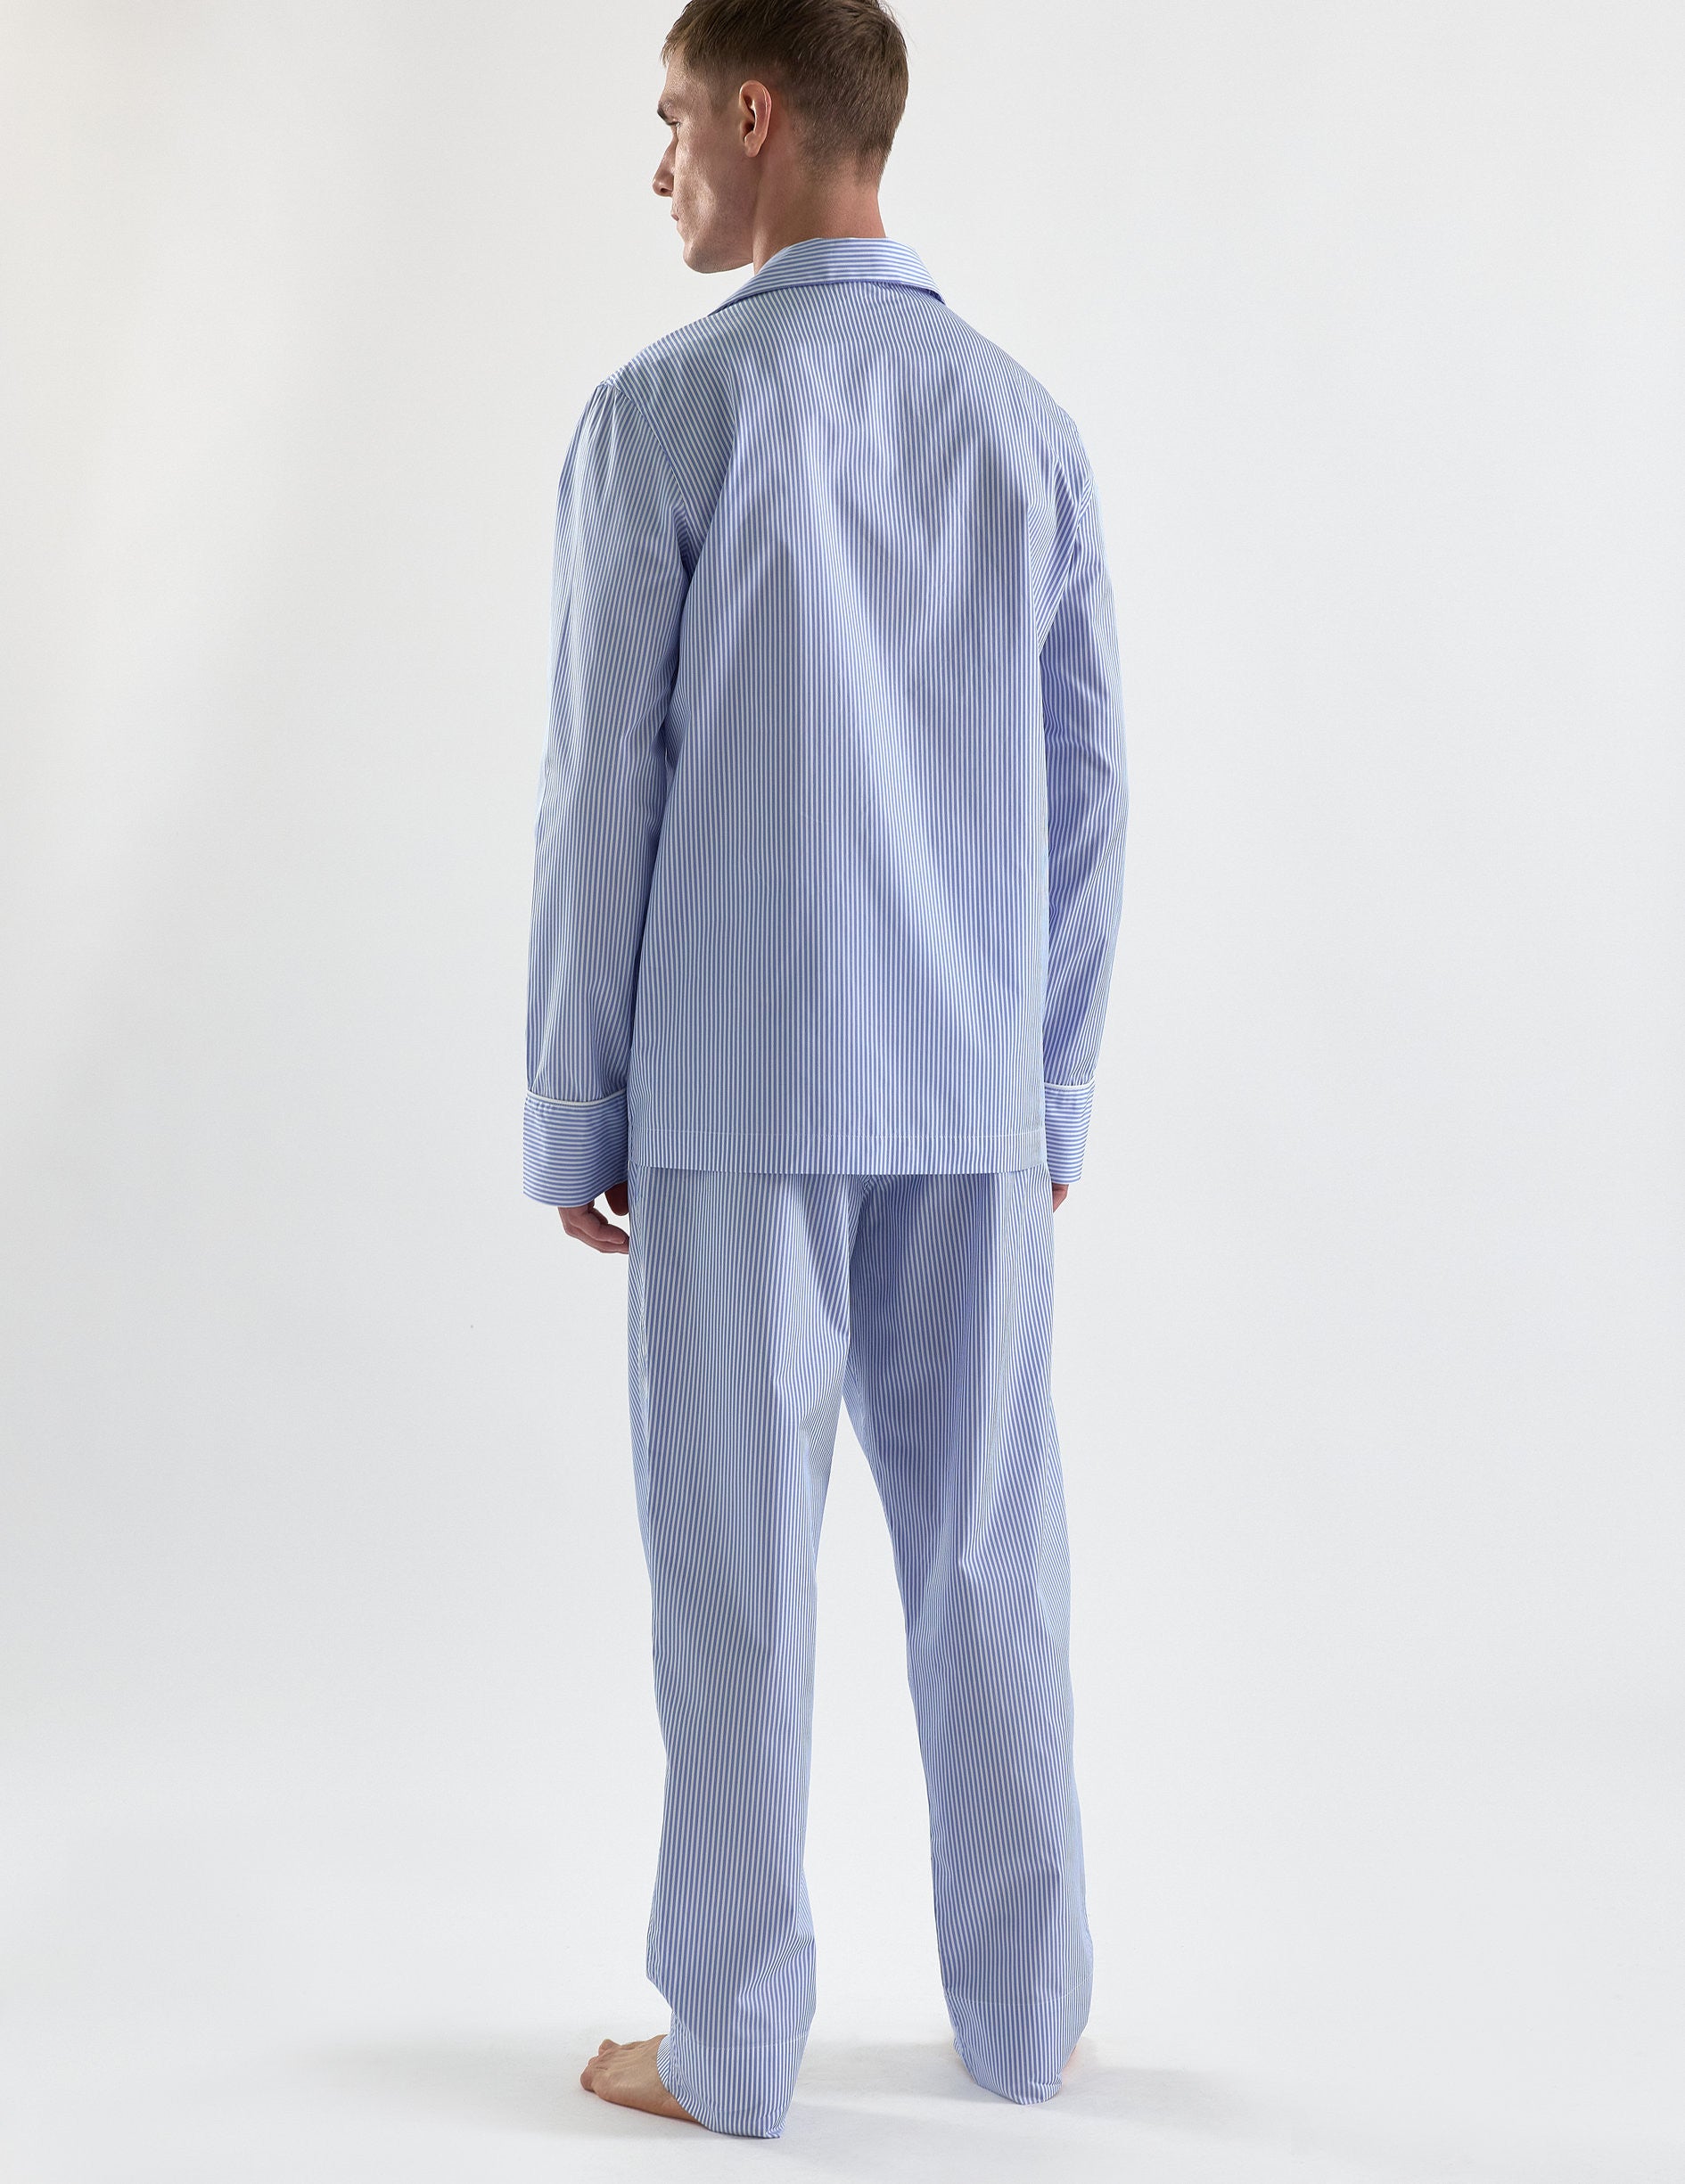 Pyjama Louis en popeline rayée bleue